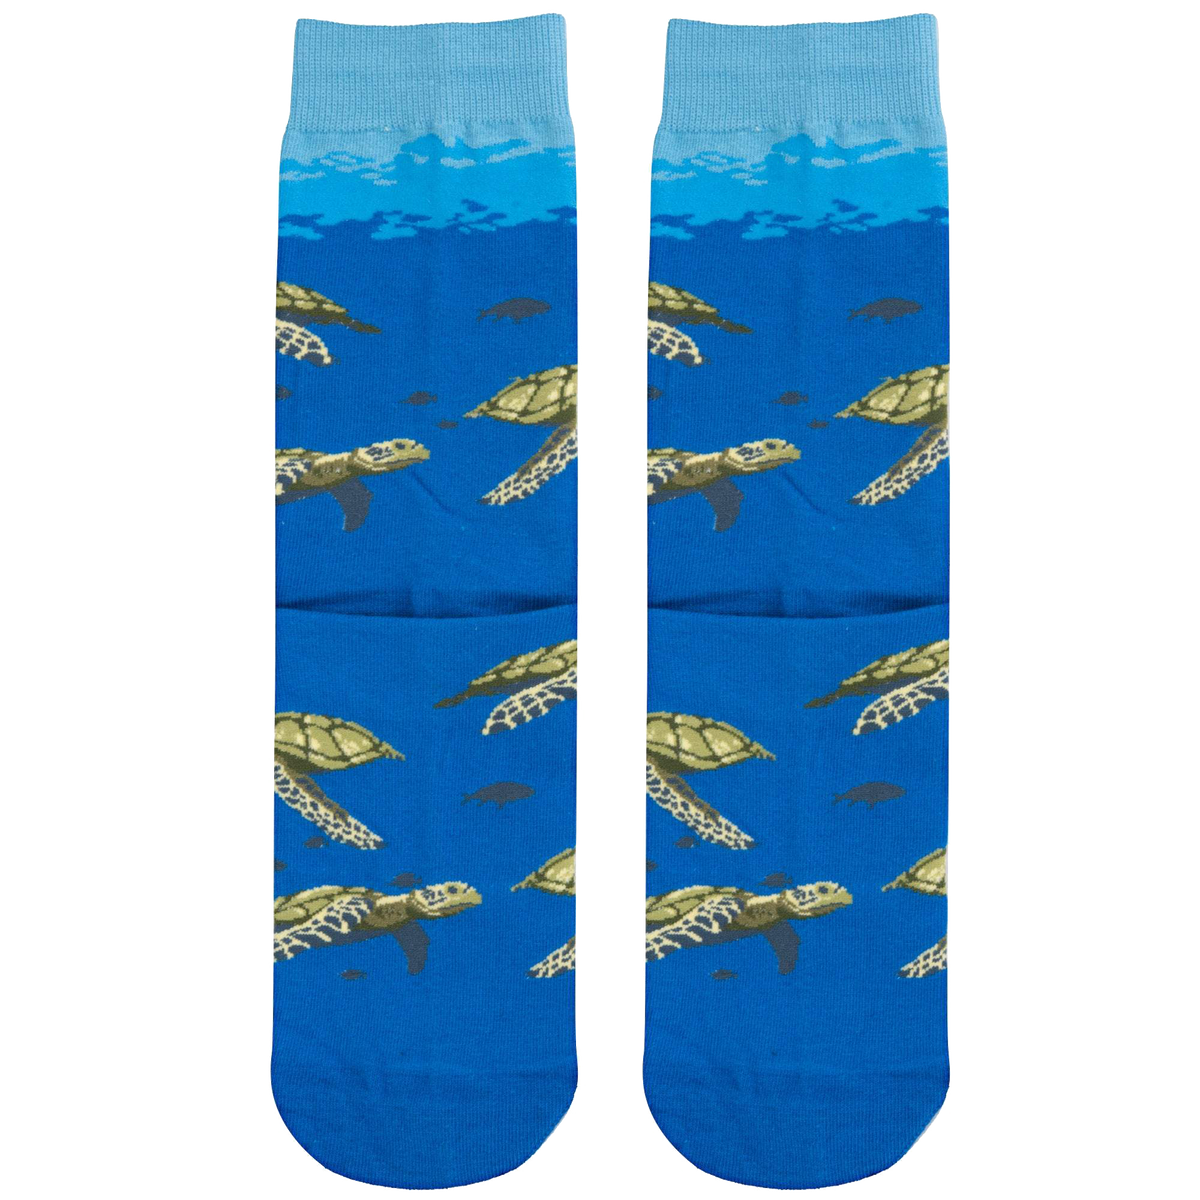 Sea Turtles Socks - Kids - 7-10